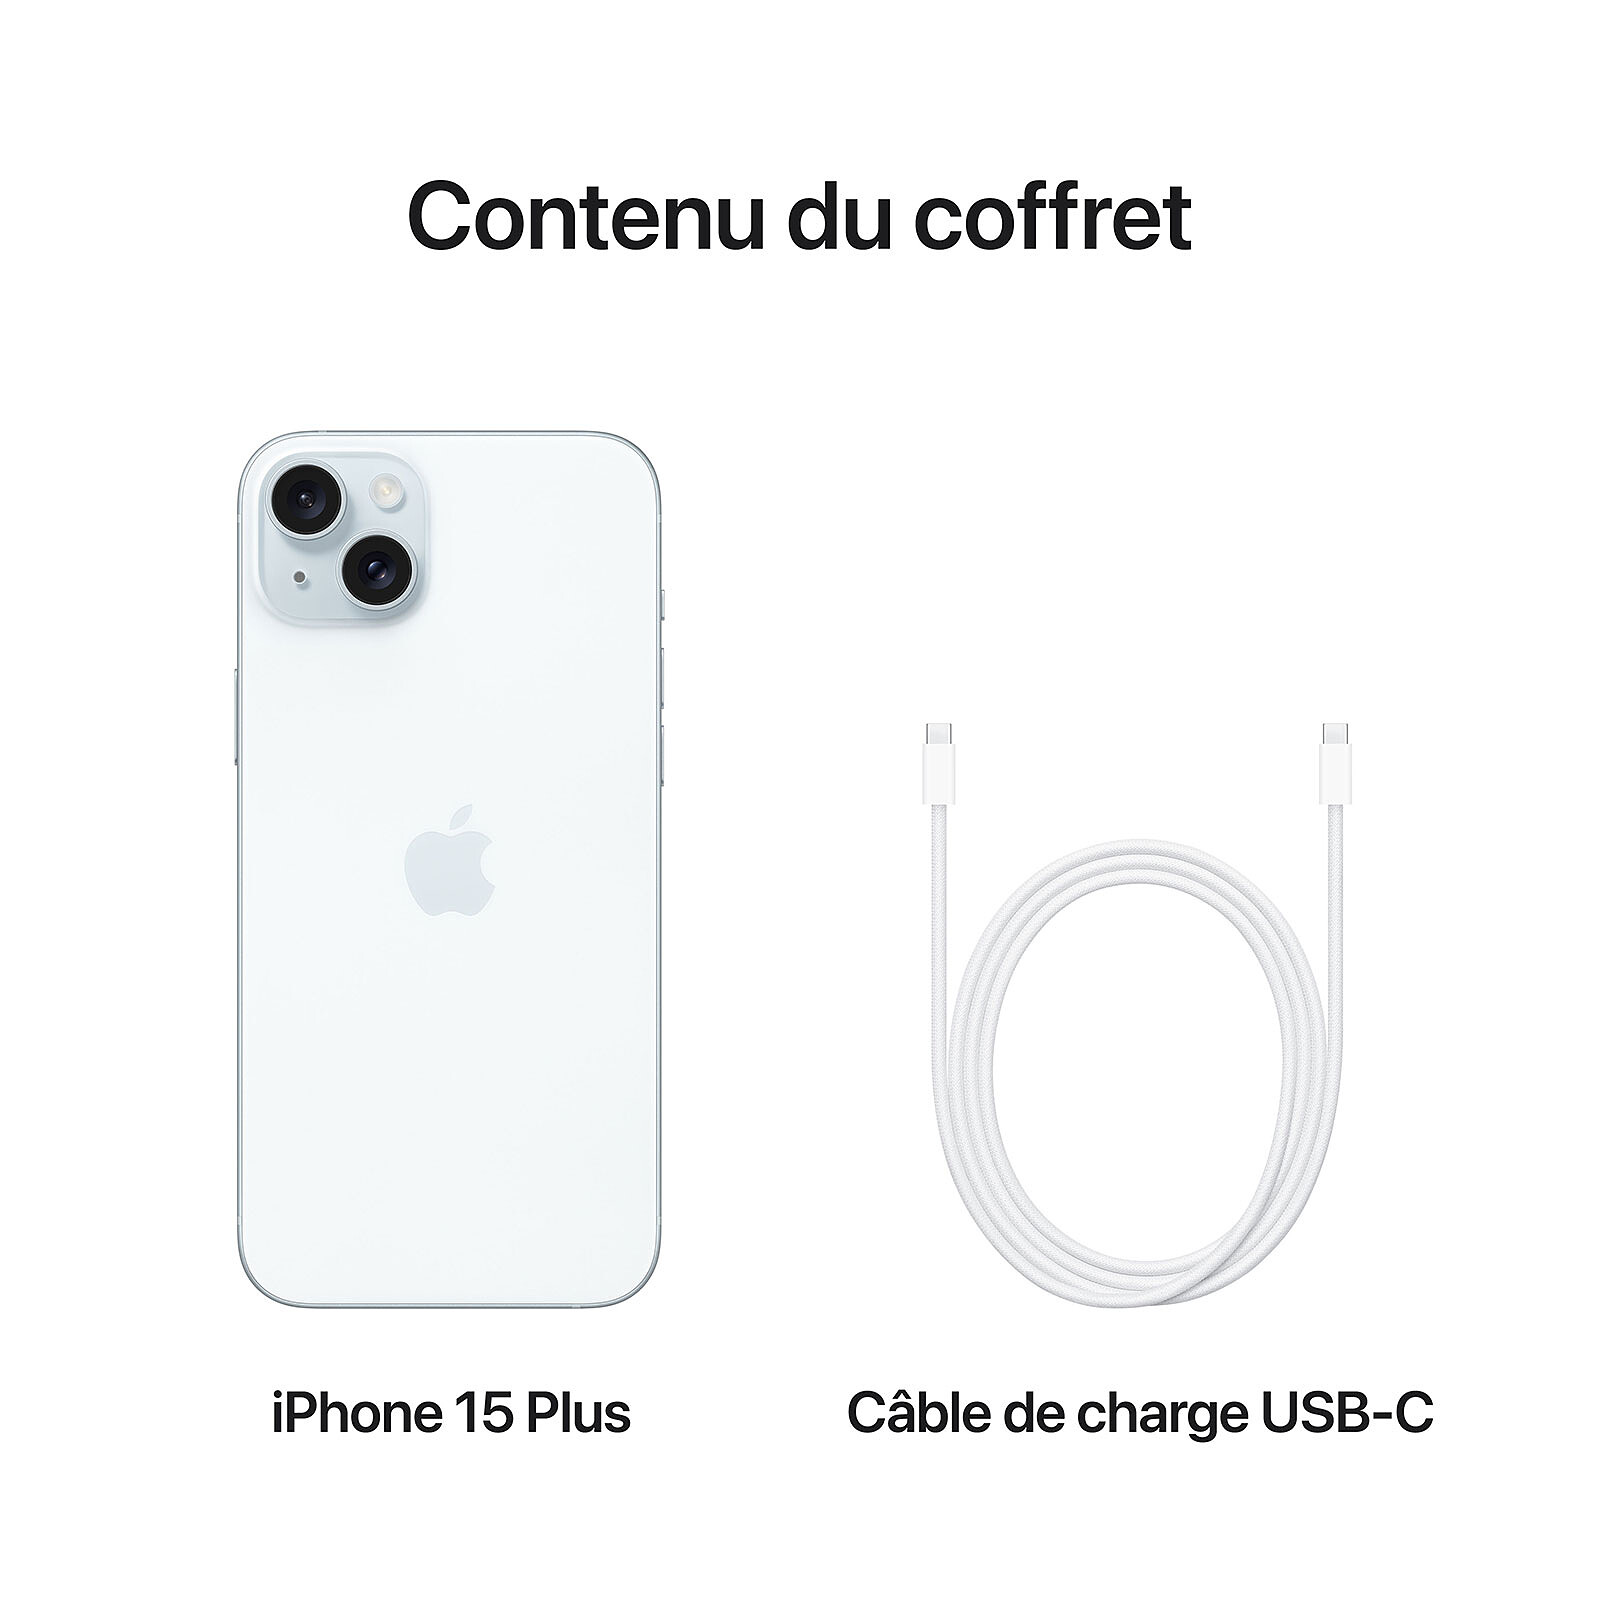 Mon câble USB-C fonctionne-t-il avec l'iPhone 15 ?